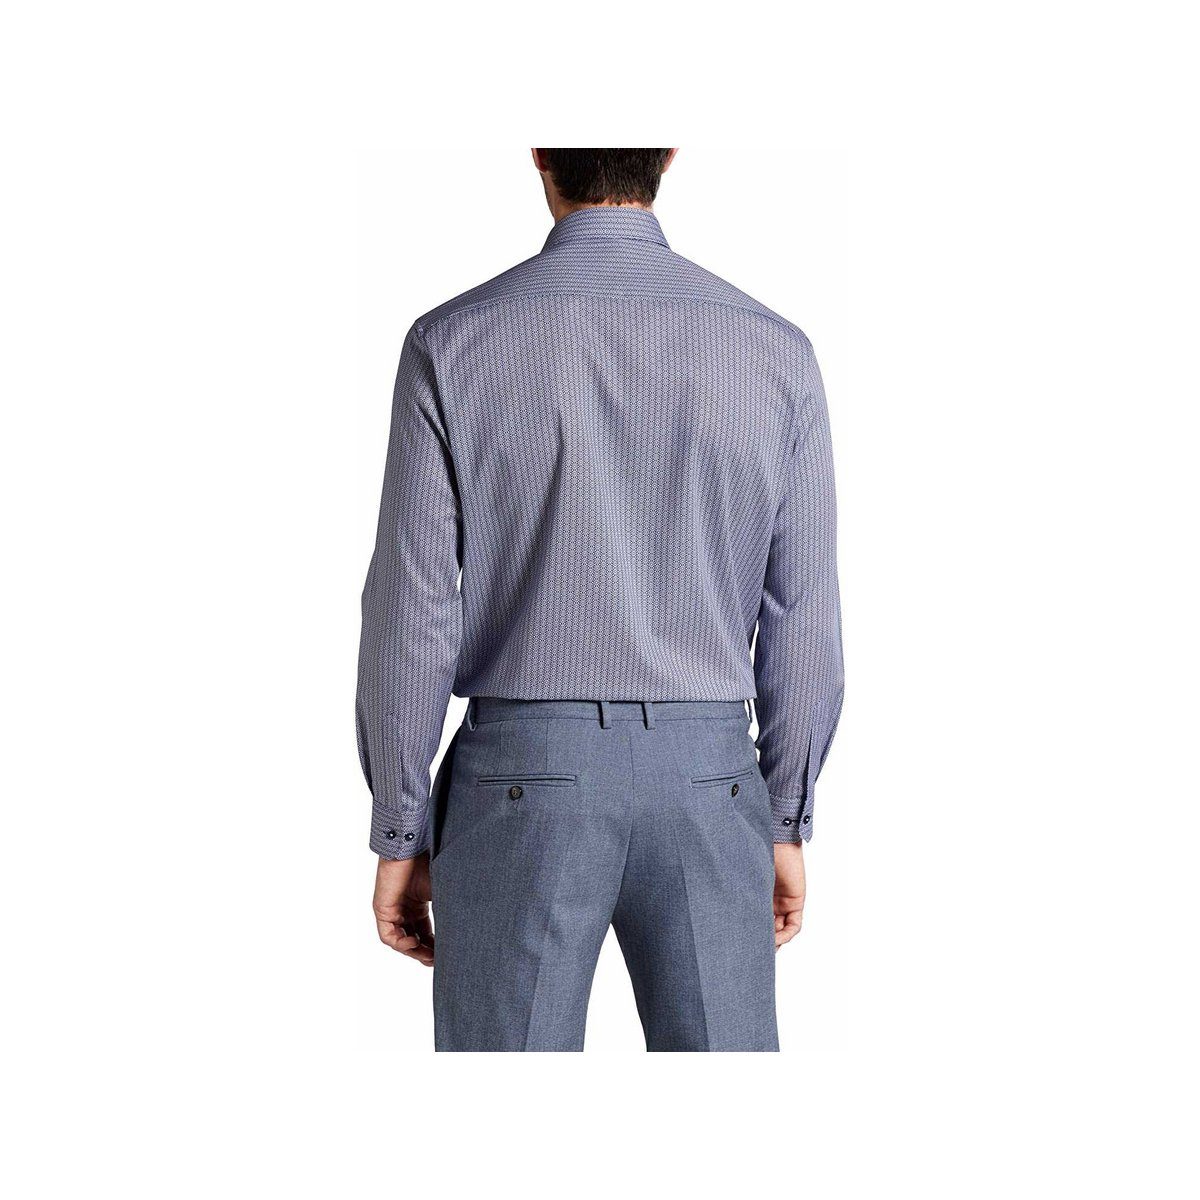 Eterna fit keine Angabe) (1-tlg., comfort blau Businesshemd